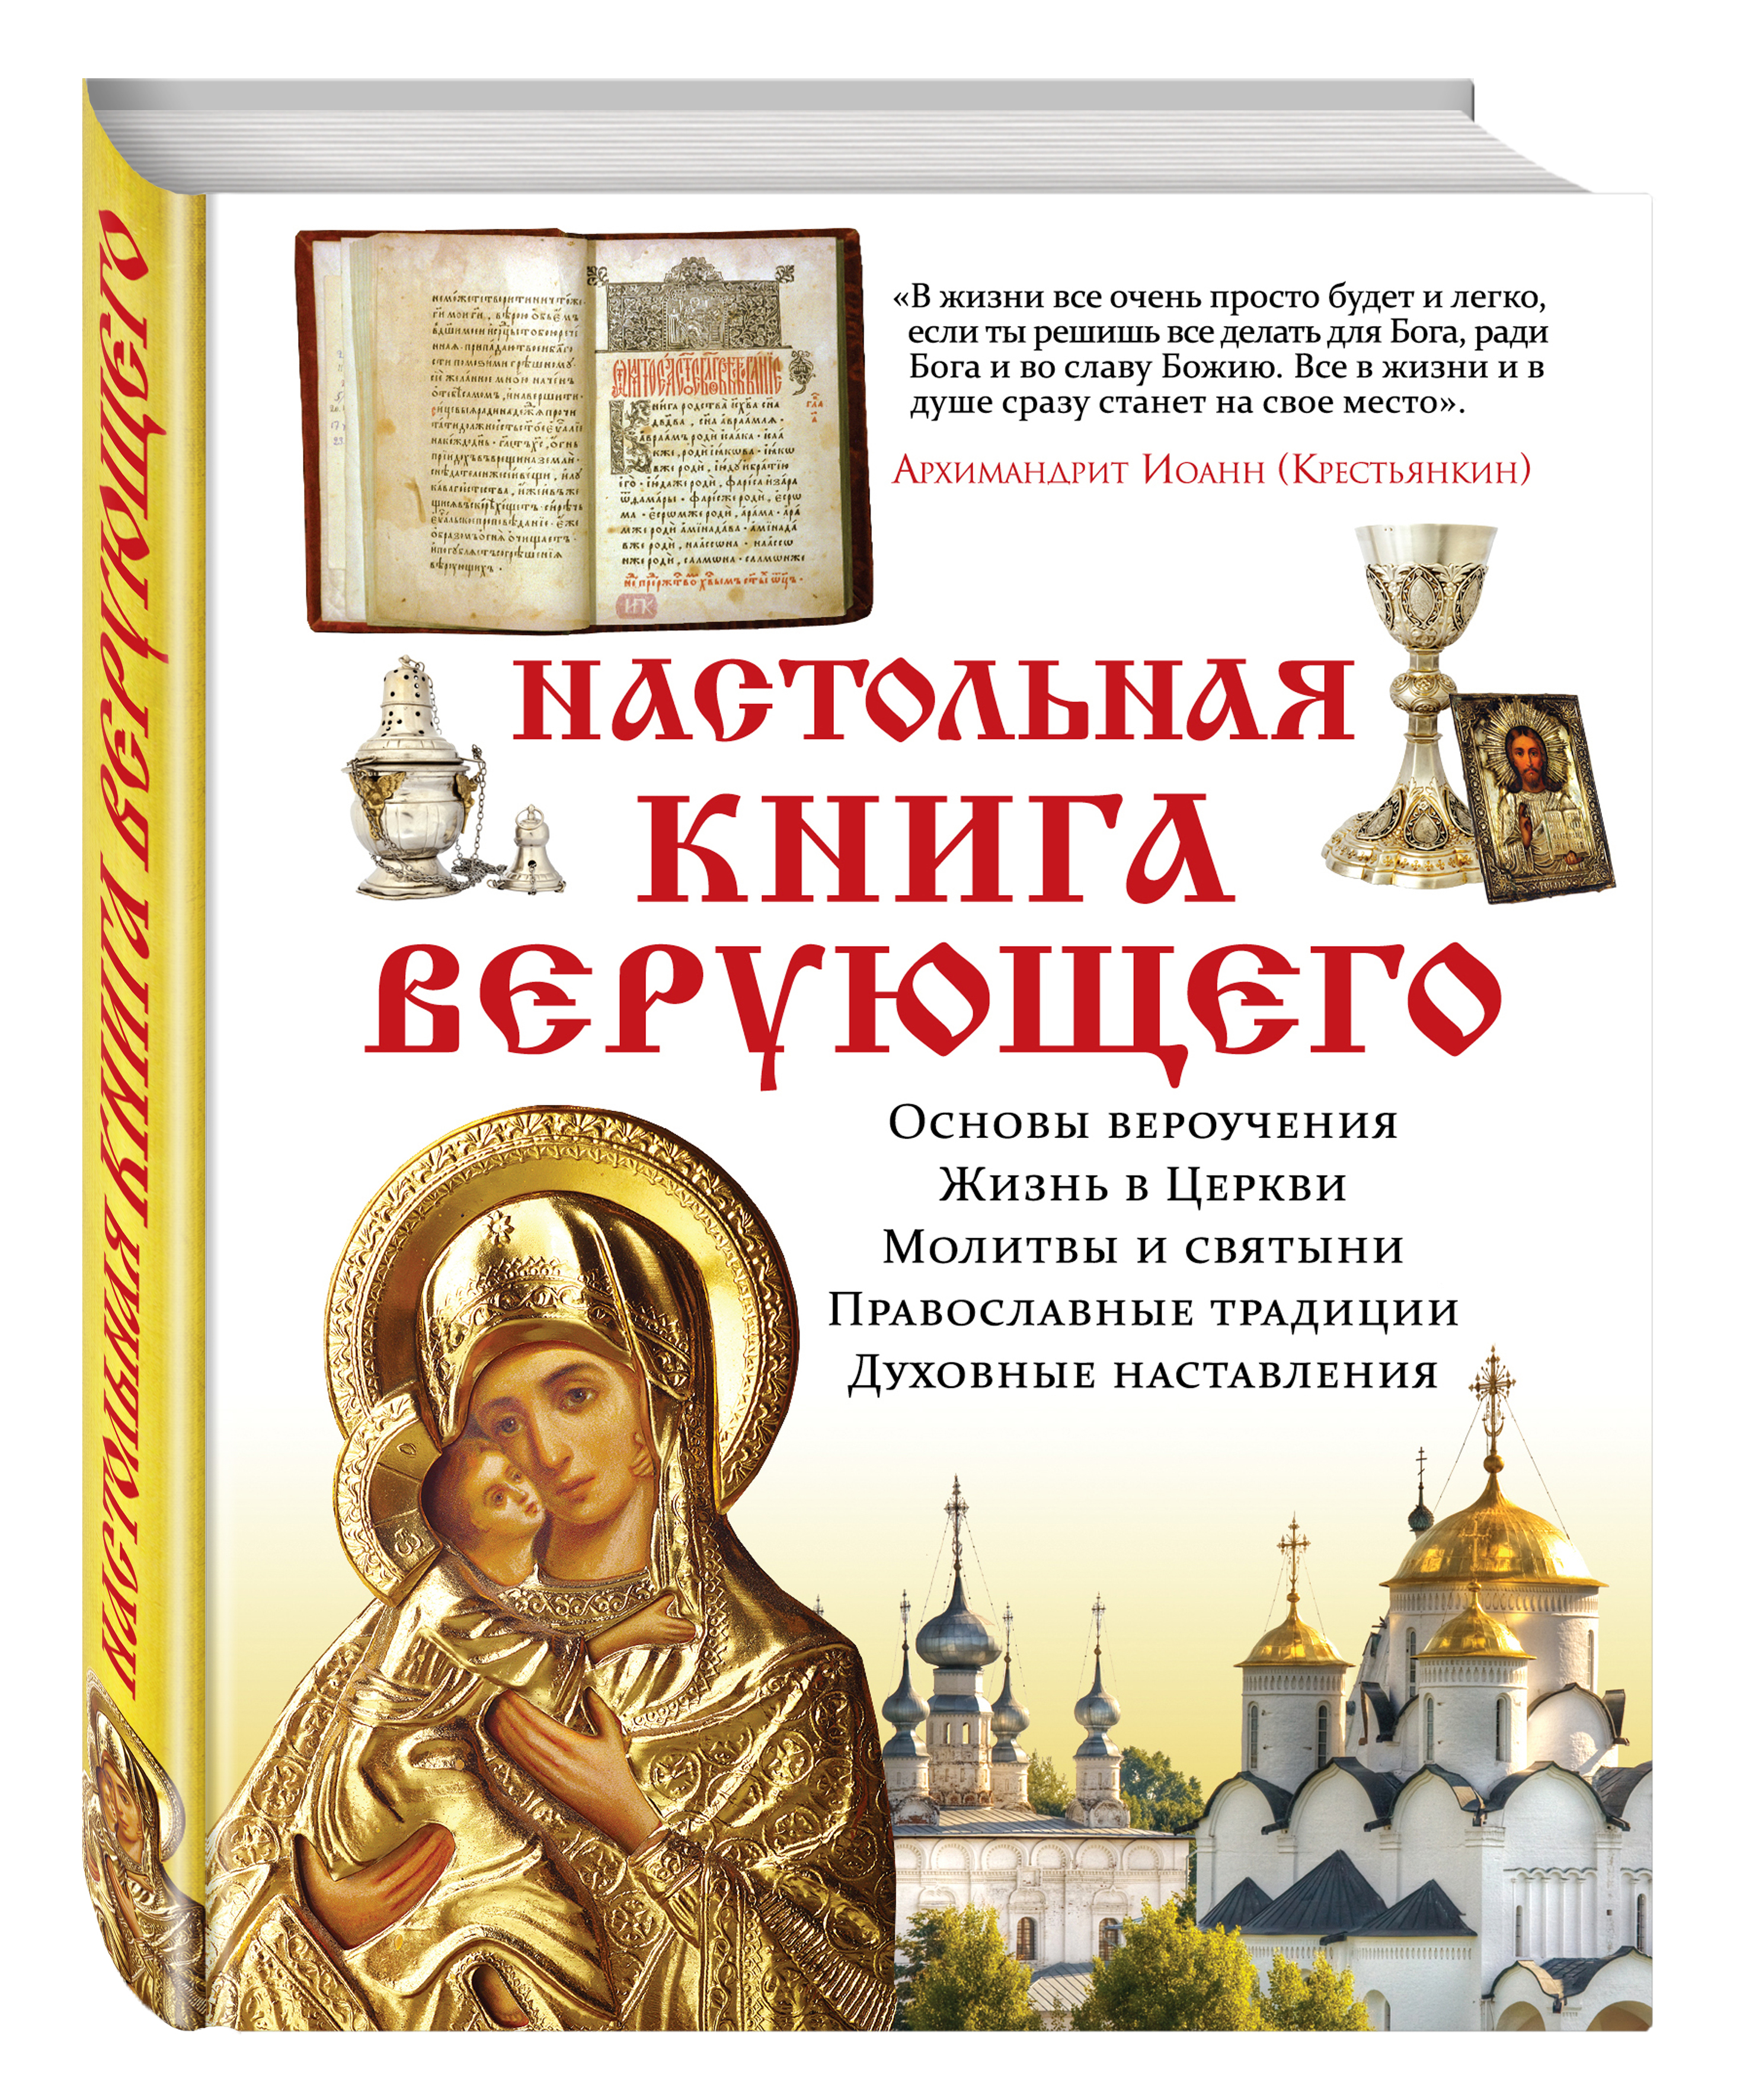 Читать православные истории. Православные книги. Церковные книги. Духовные книги. Православная литература книги.